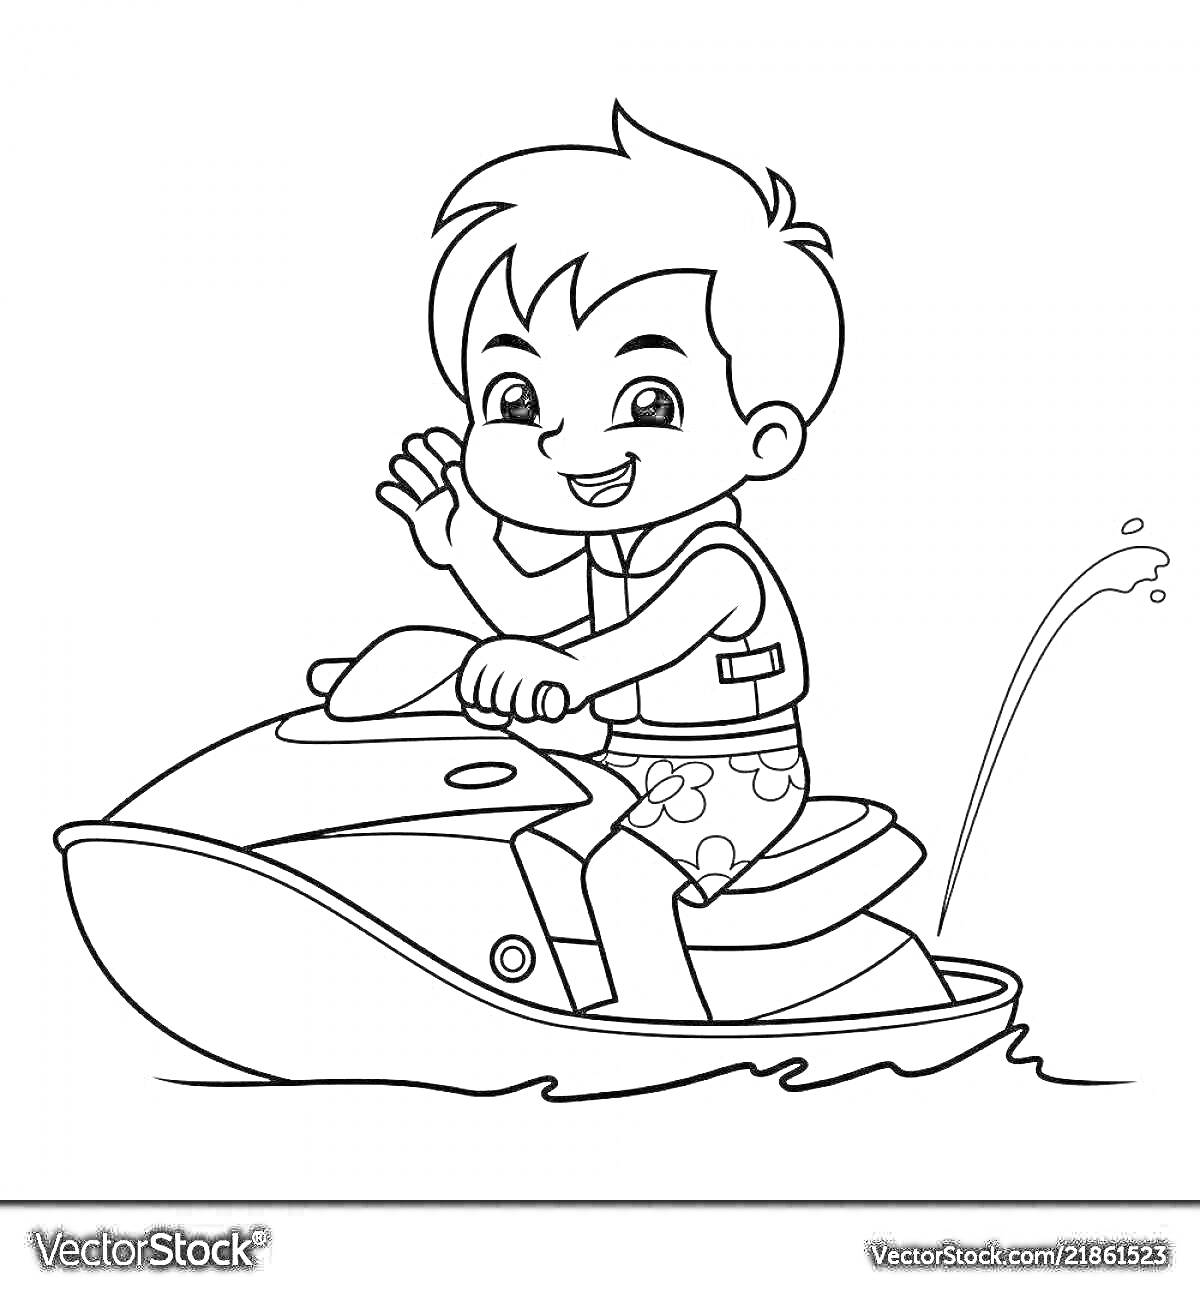 Раскраска Ребенок на гидроцикле в спасательном жилете и плавательных шортах